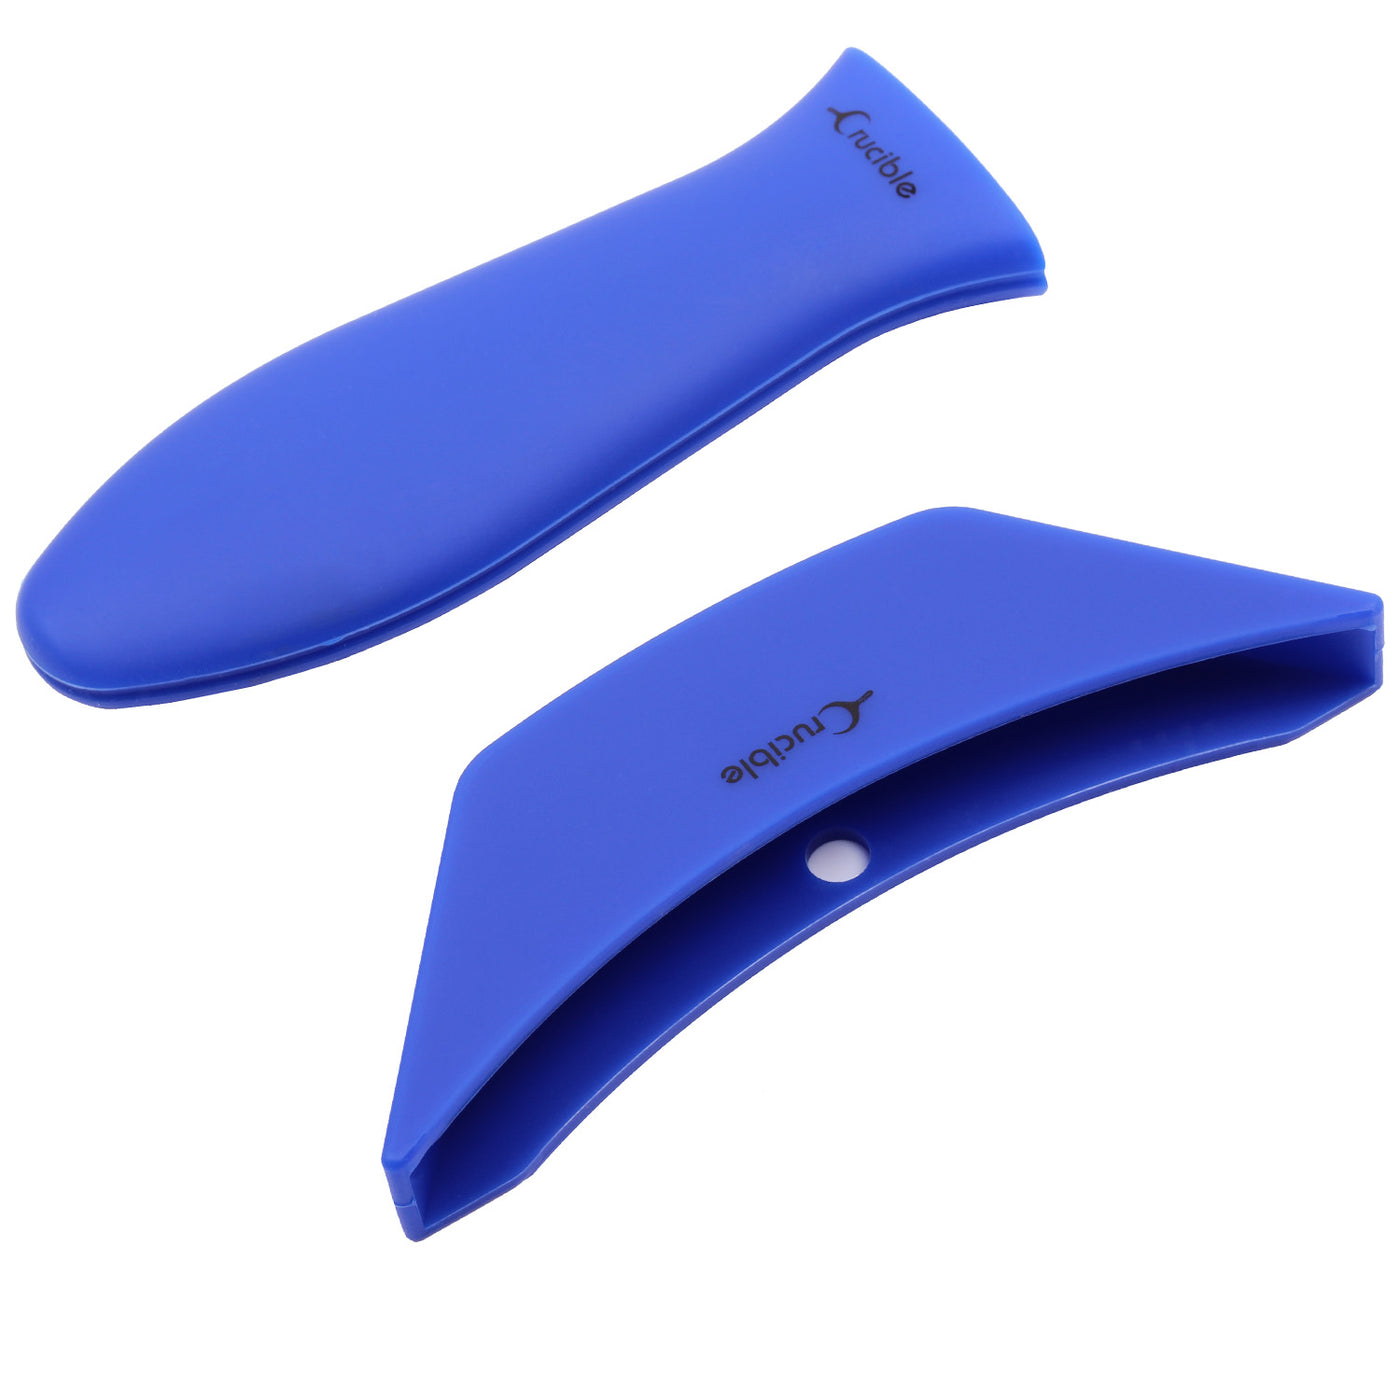 Suporte de alça quente de silicone, porta-panelas (combo azul de 2 unidades) - punho de manga, capa de alça